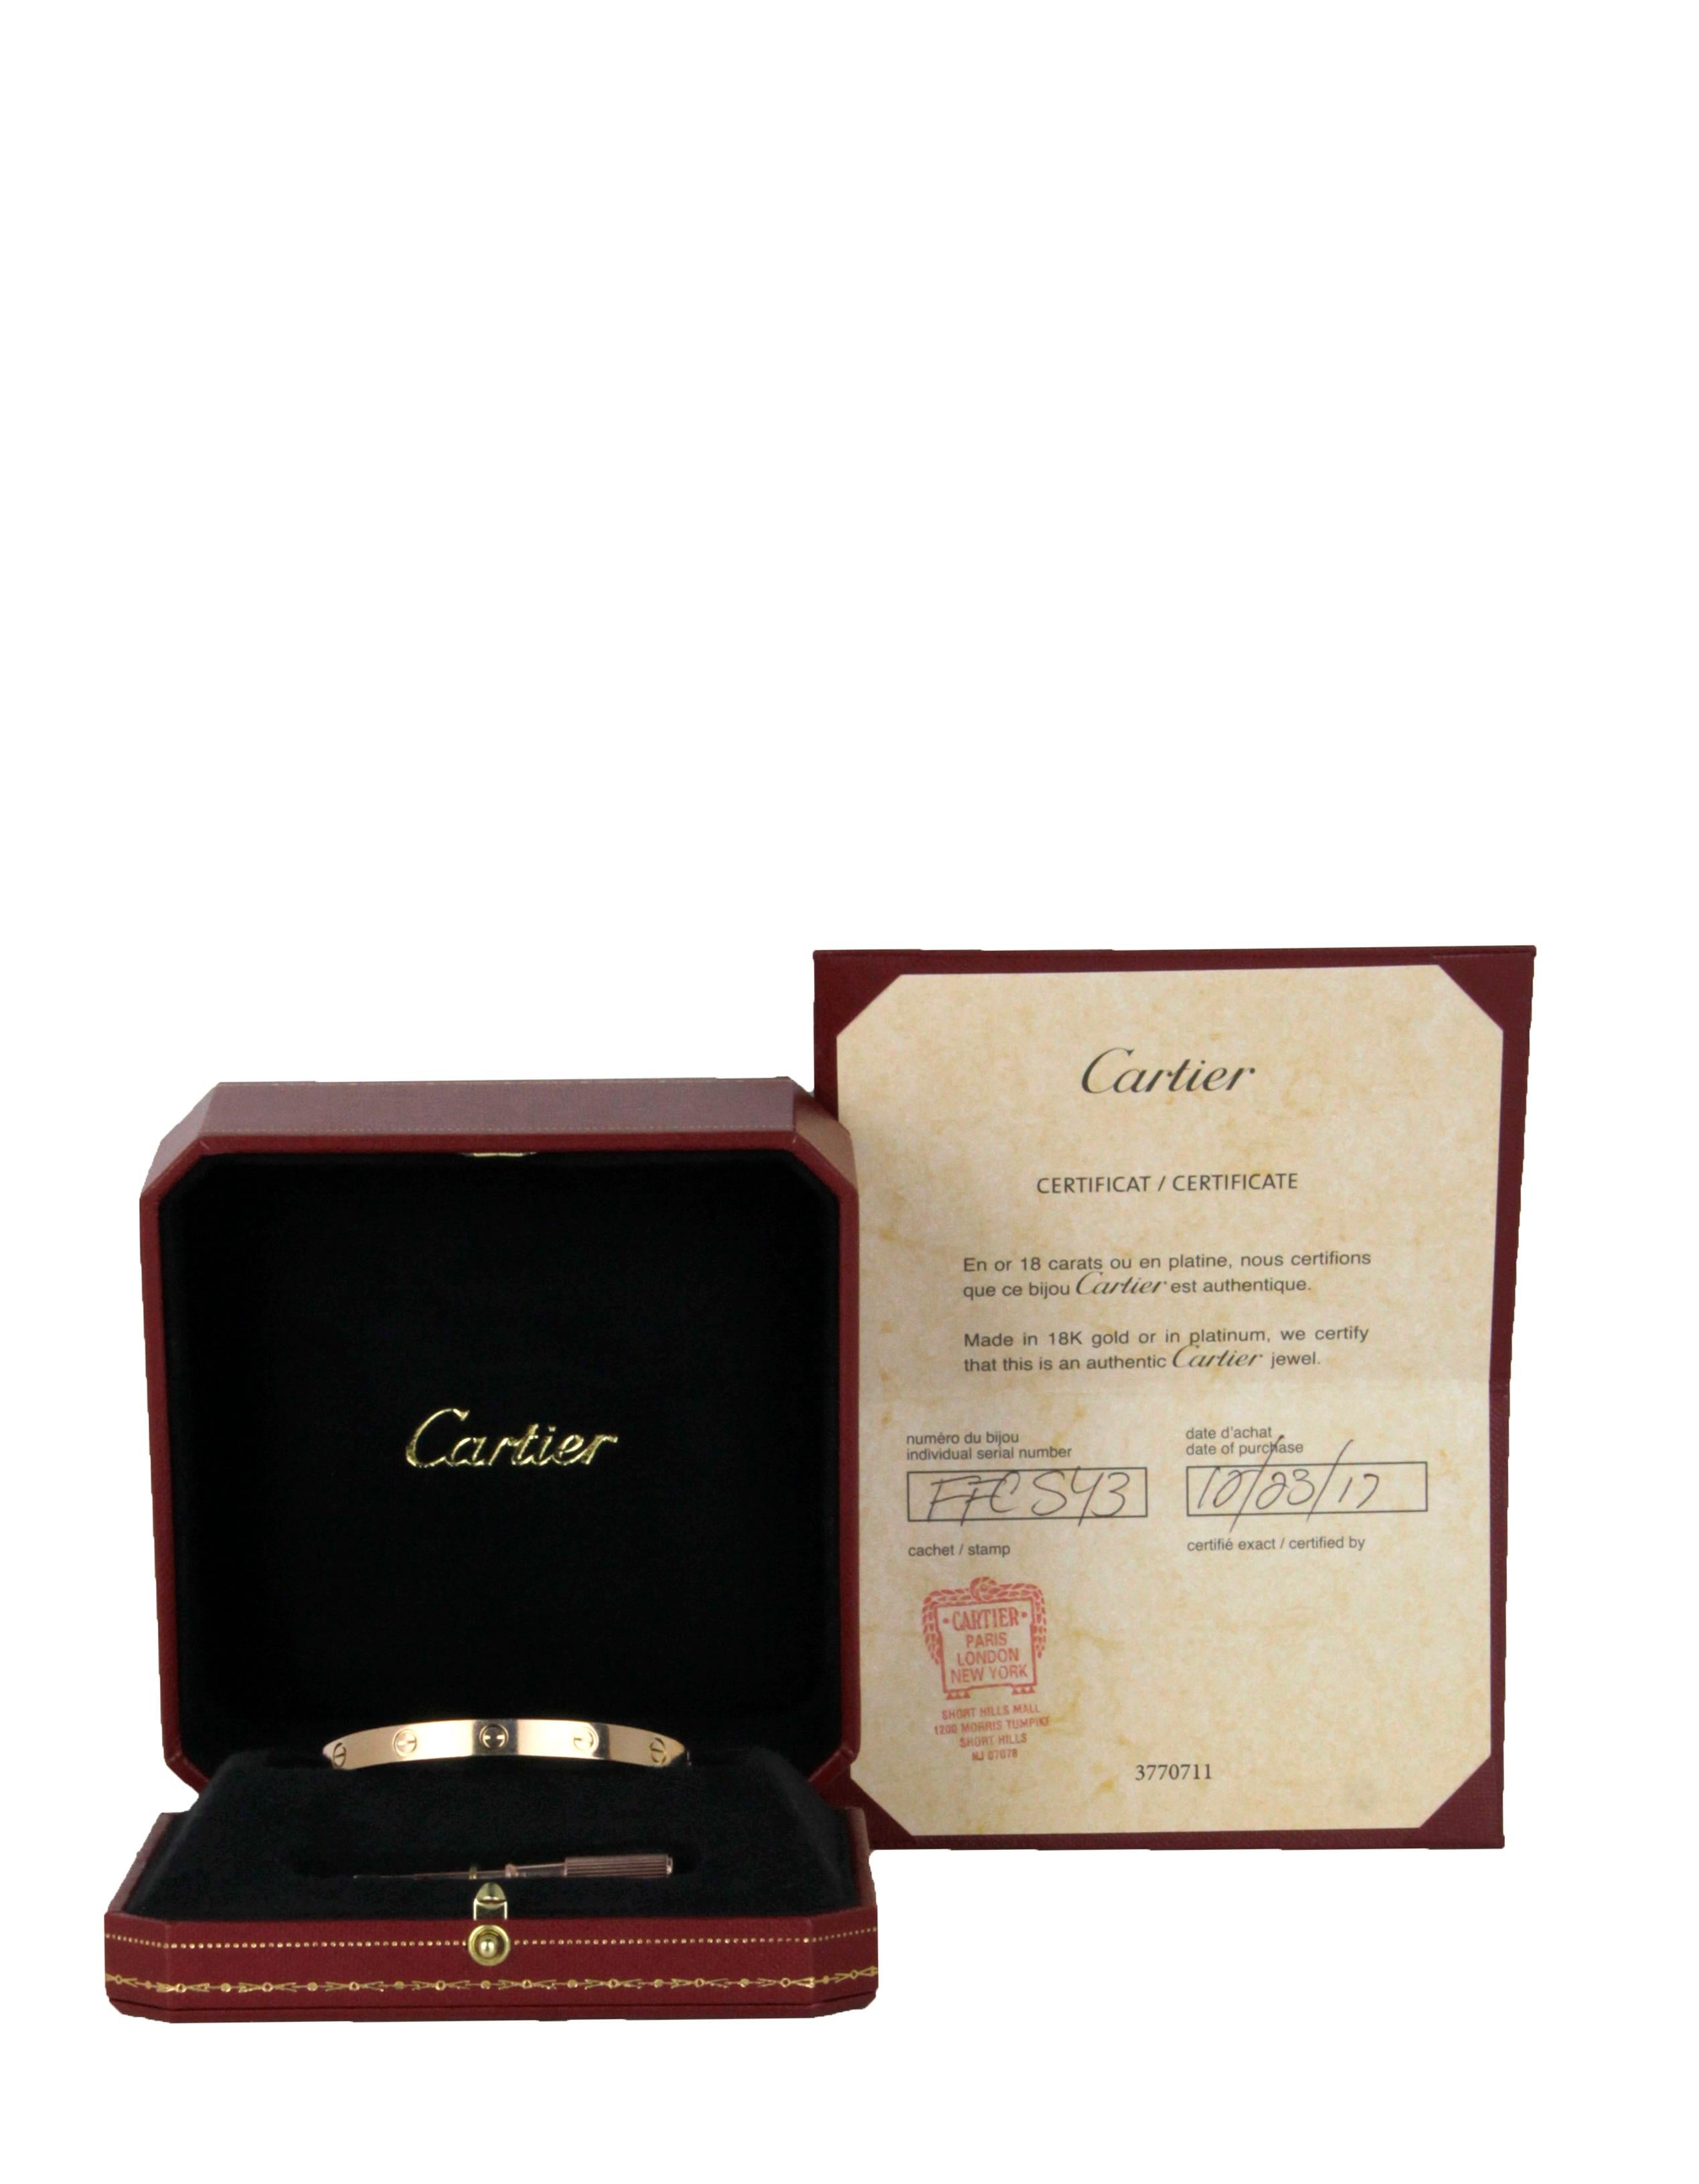 Cartier 18k Rose Gold LOVE Bracelet 

Year of Production: 2017
Color: Pink gold
Materials: 18k rose gold
Hallmarks: 